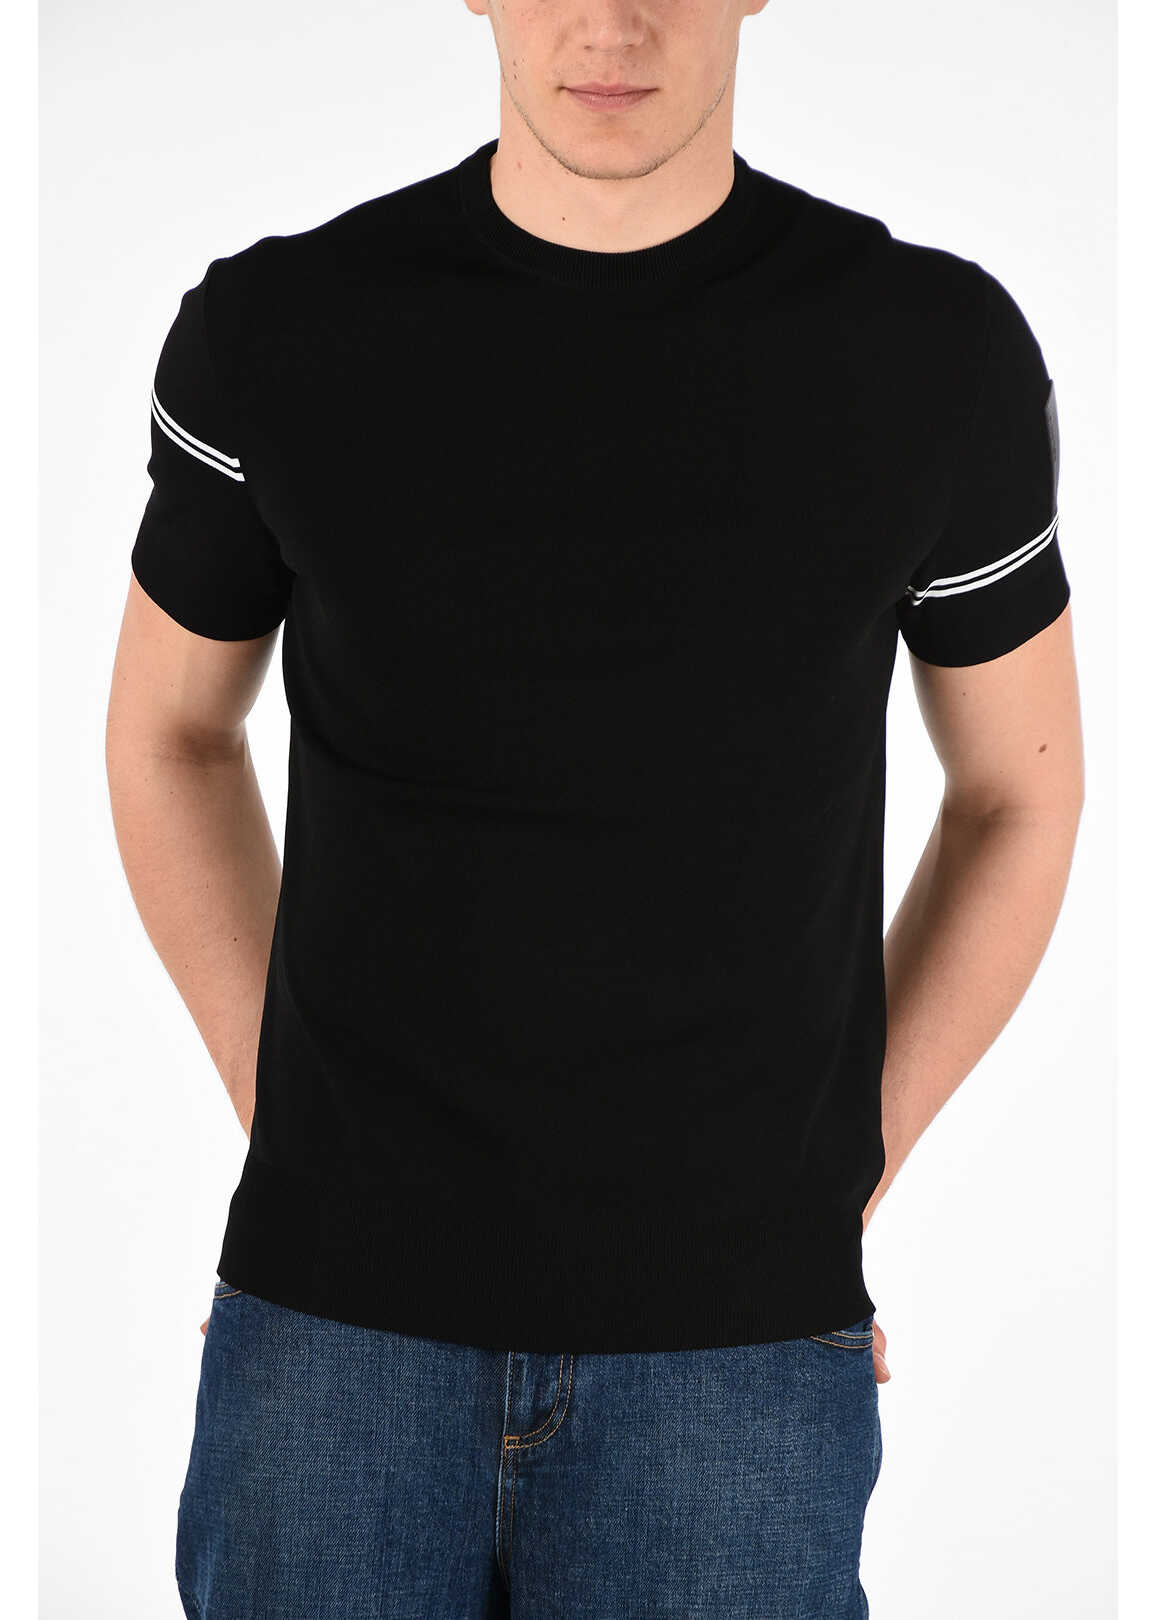 Neil Barrett Short Sleeve OFF-CENTERED STRIPE Slim Fit Sweater BLACK